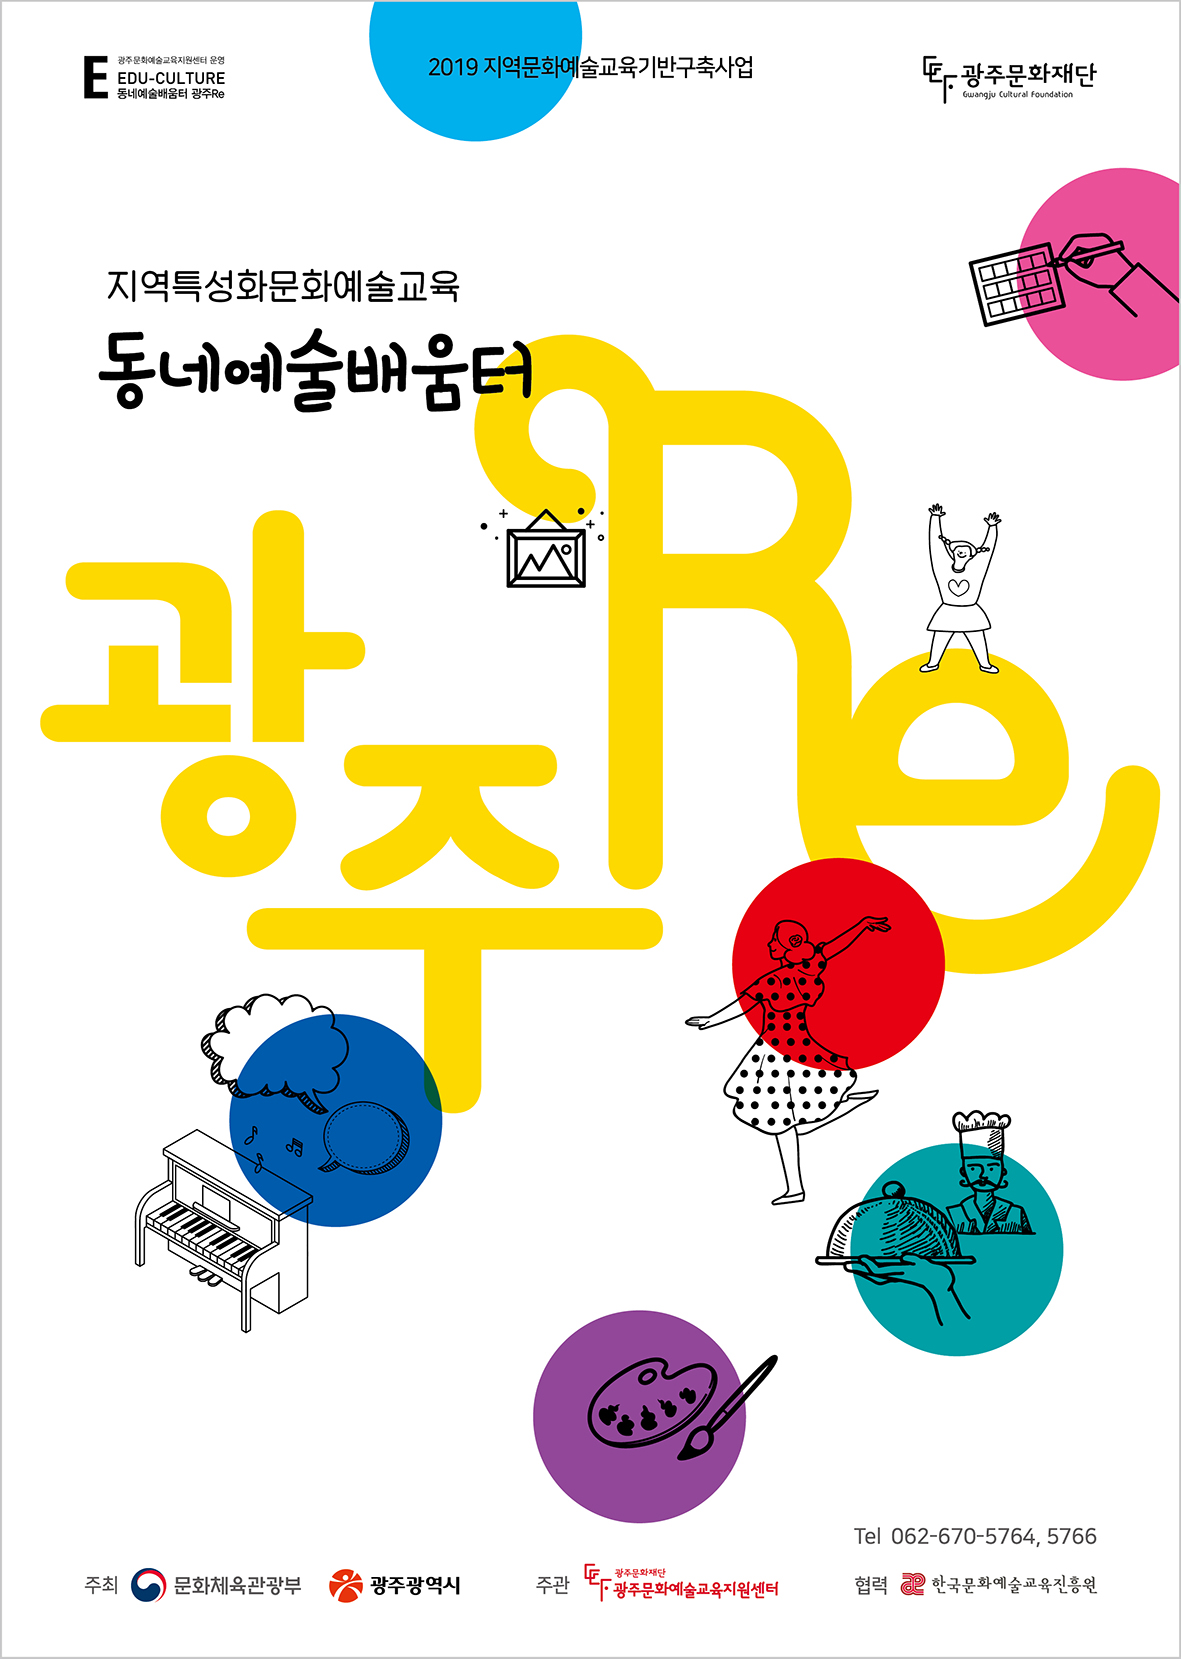 「지역특성화문화예술교육-동네예술배움터 광주Re」 포스터.jpg